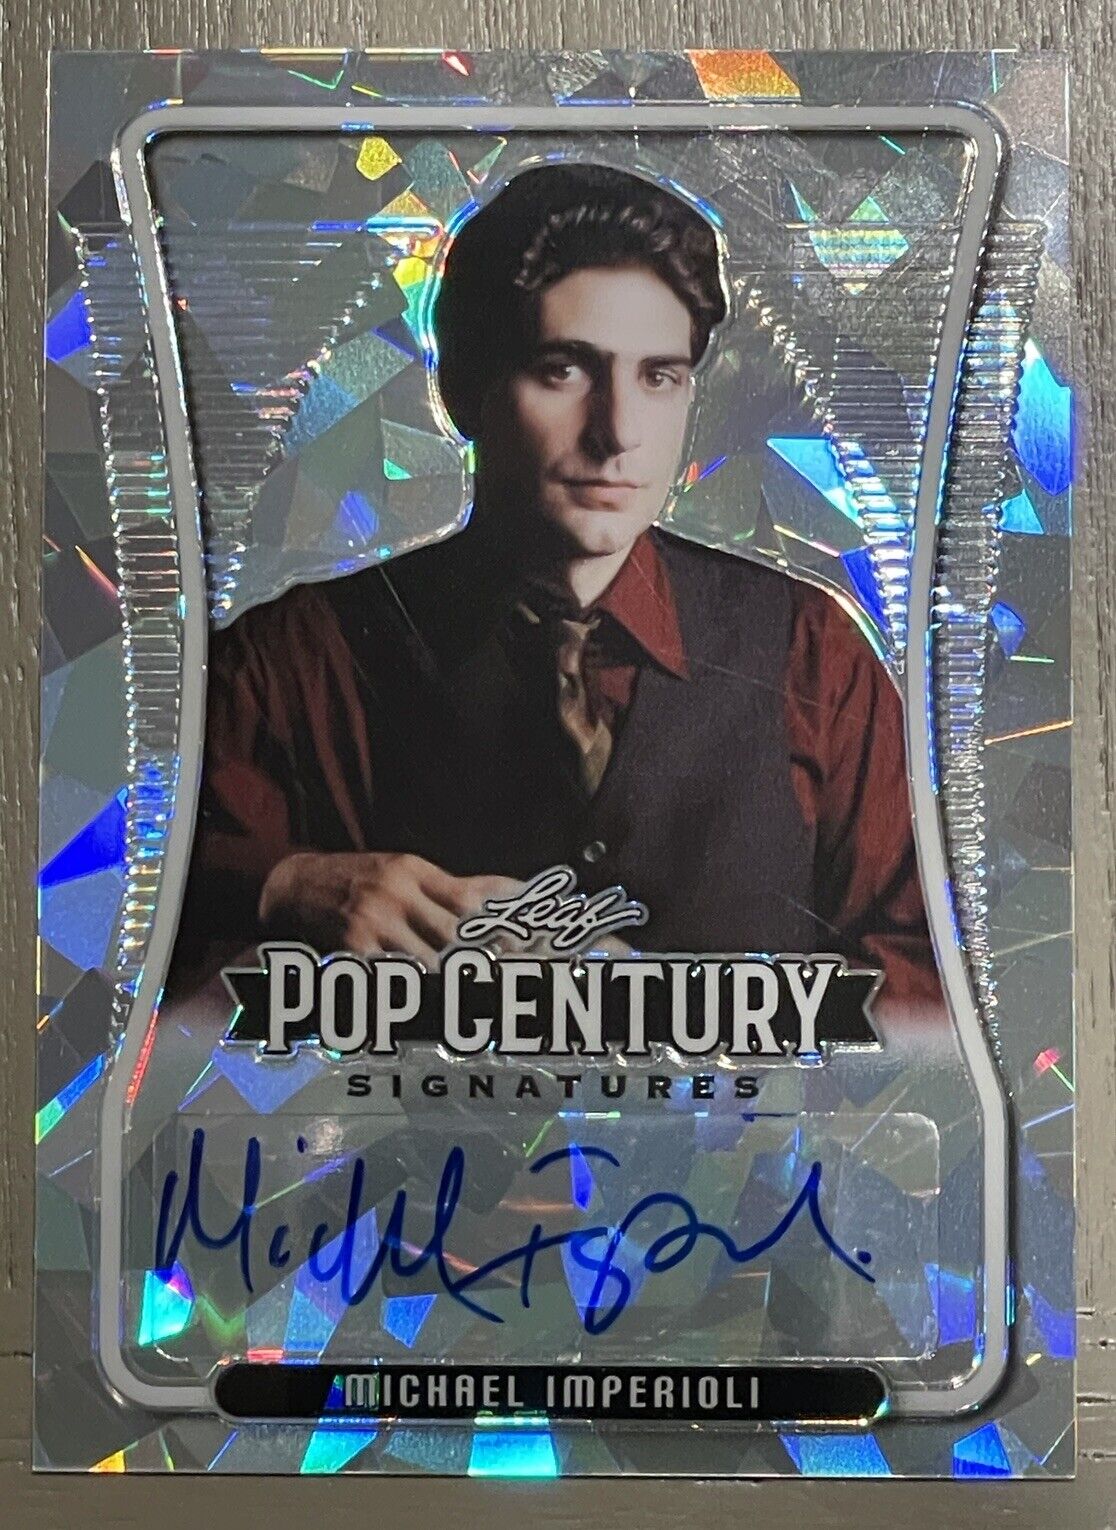 Michael Imperioli 2020 Leaf Pop Century Signatures Card Autograph The Sopranos